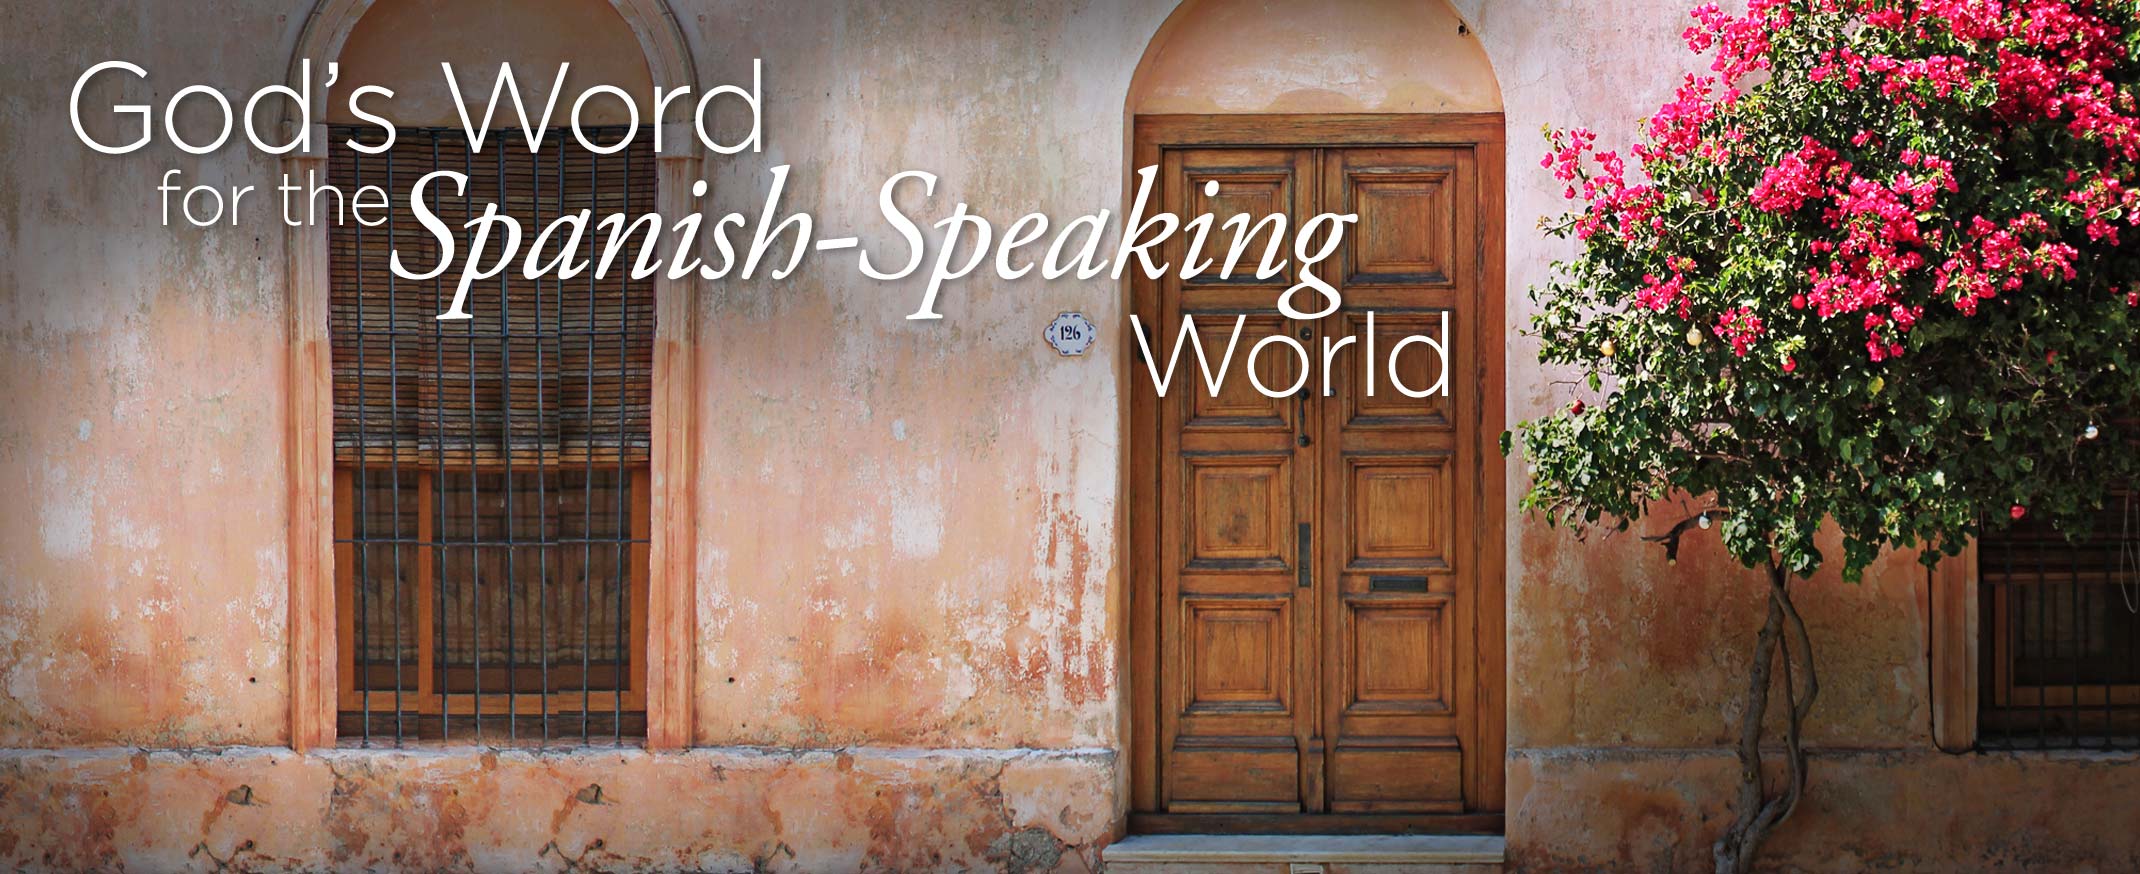 God's Word for the Spanish-Speaking World